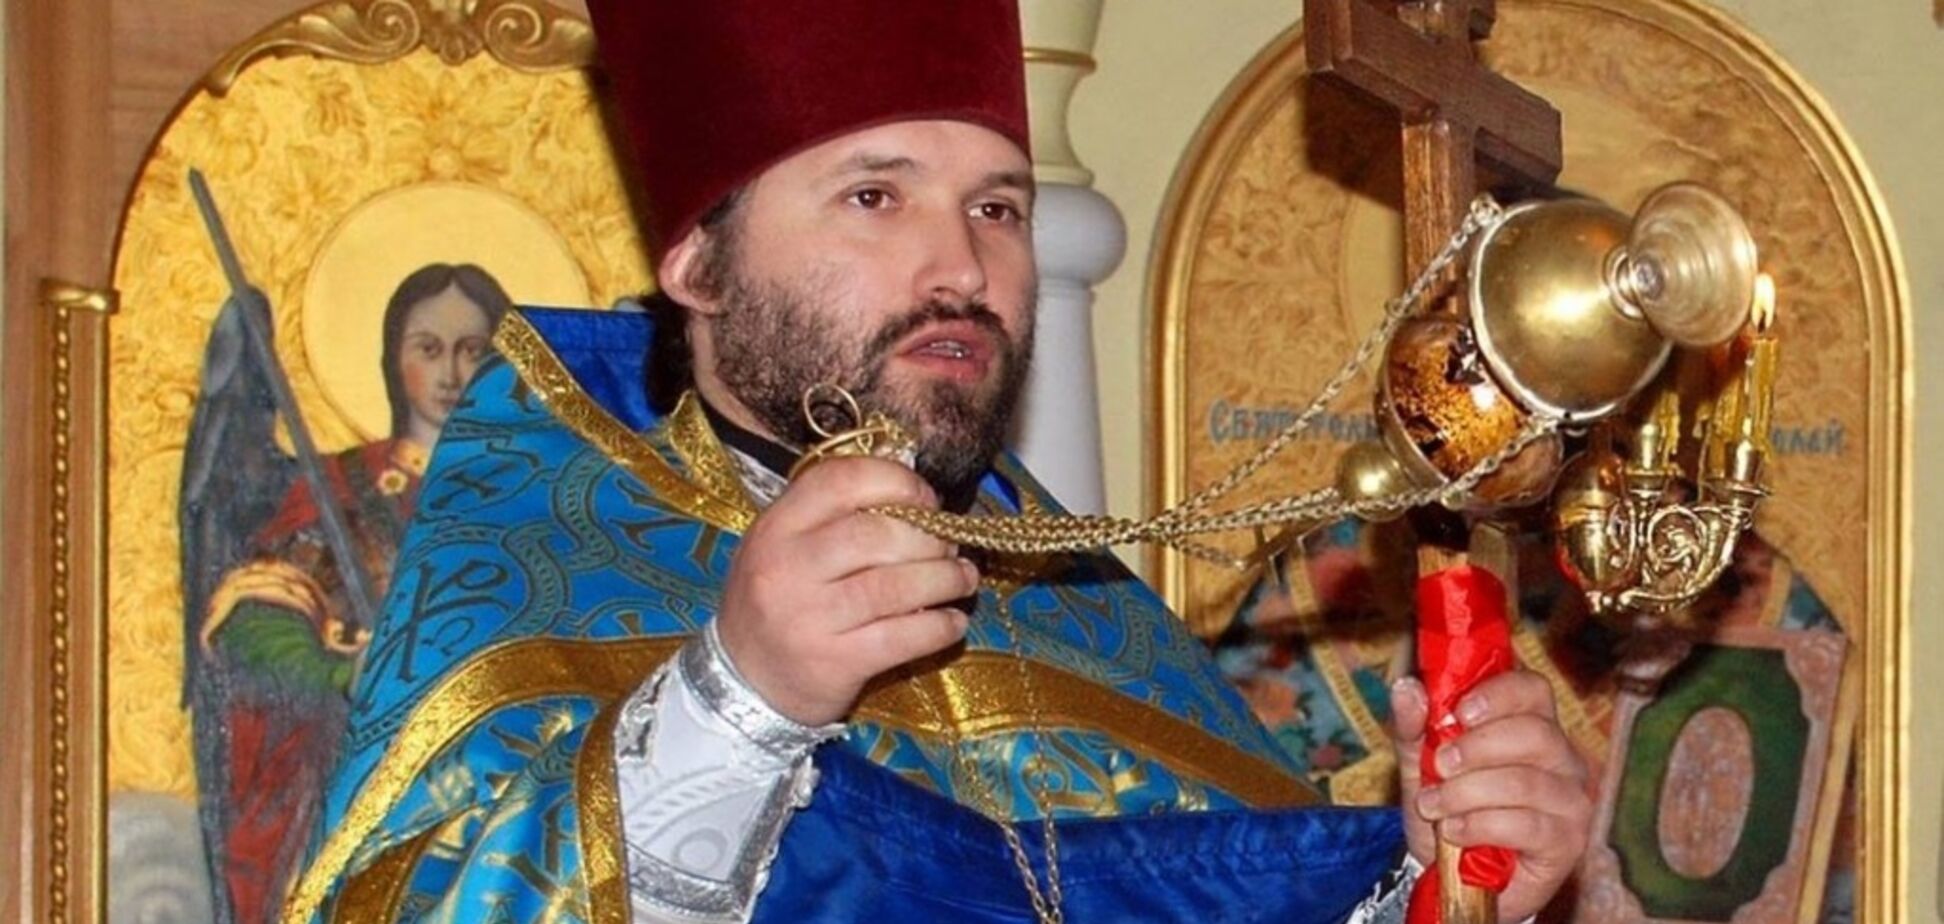 'Ми не такі': український священик дав відповідь фанатам РПЦ